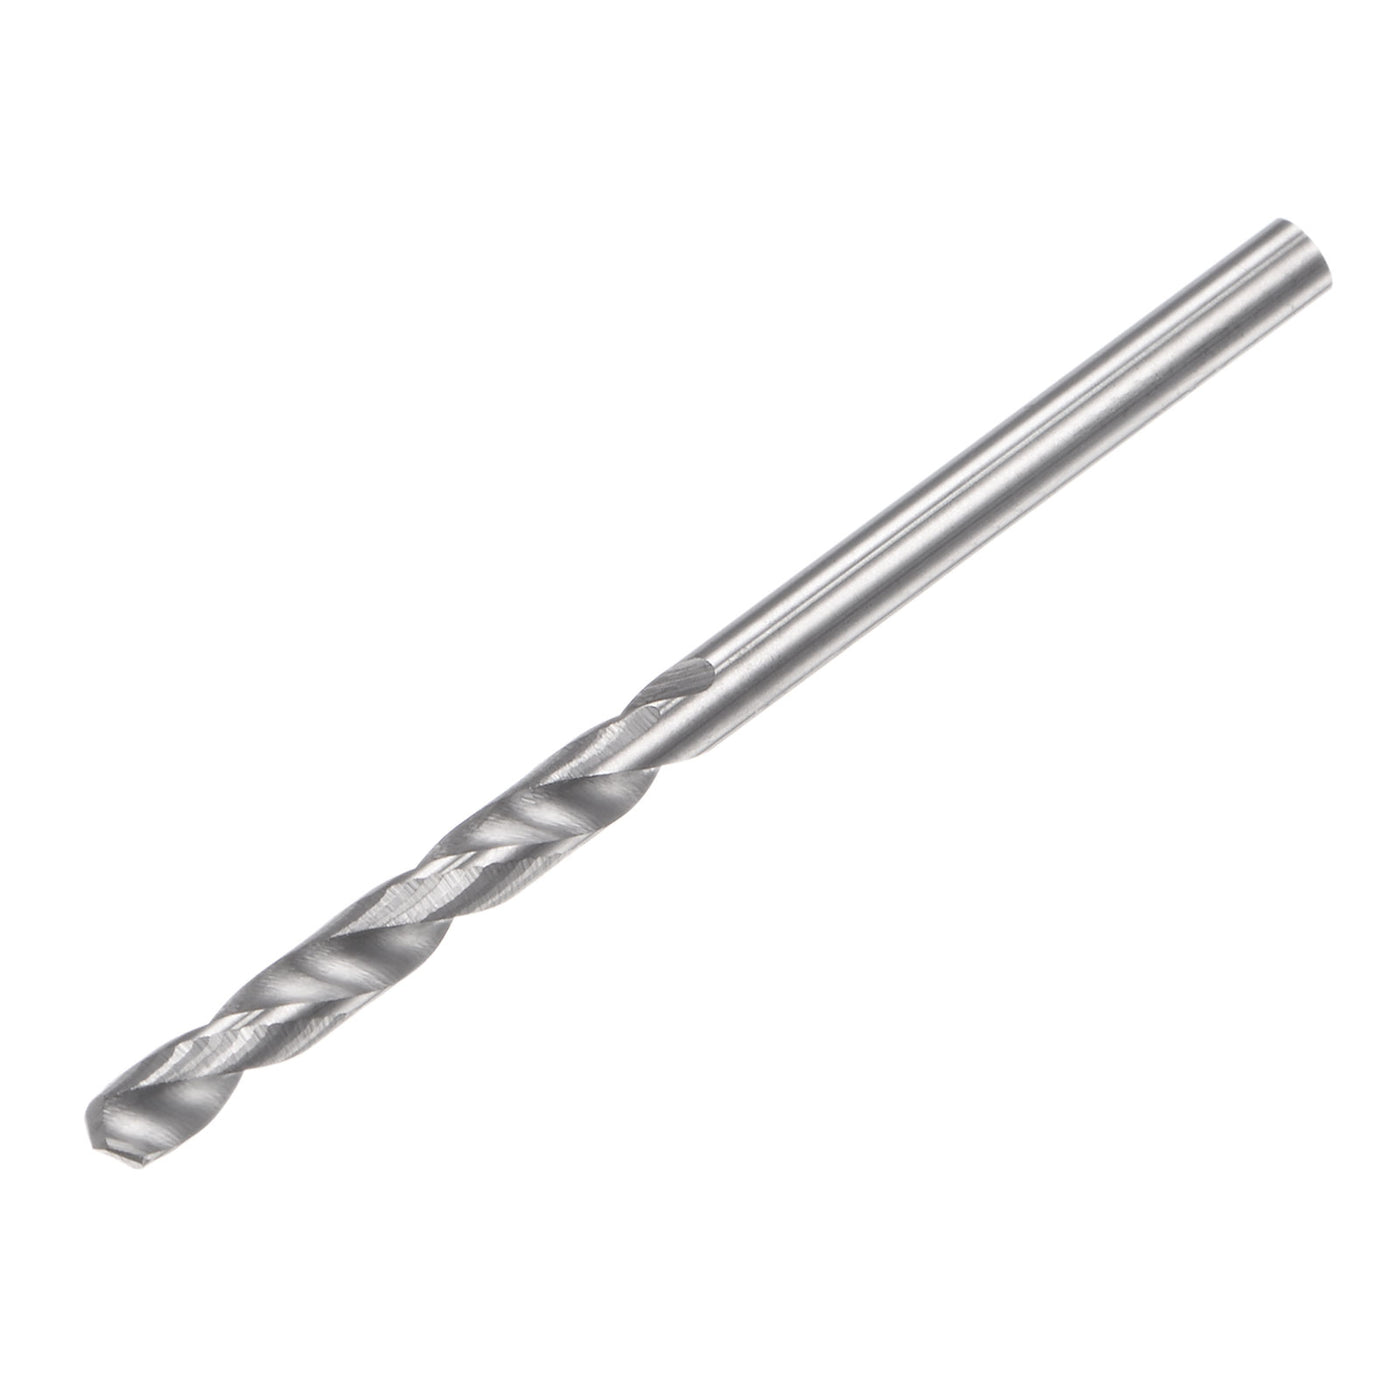 uxcell Uxcell 2.4mm C2/K20 Tungsten Carbide Straight Shank Spiral Flutes Twist Drill Bit